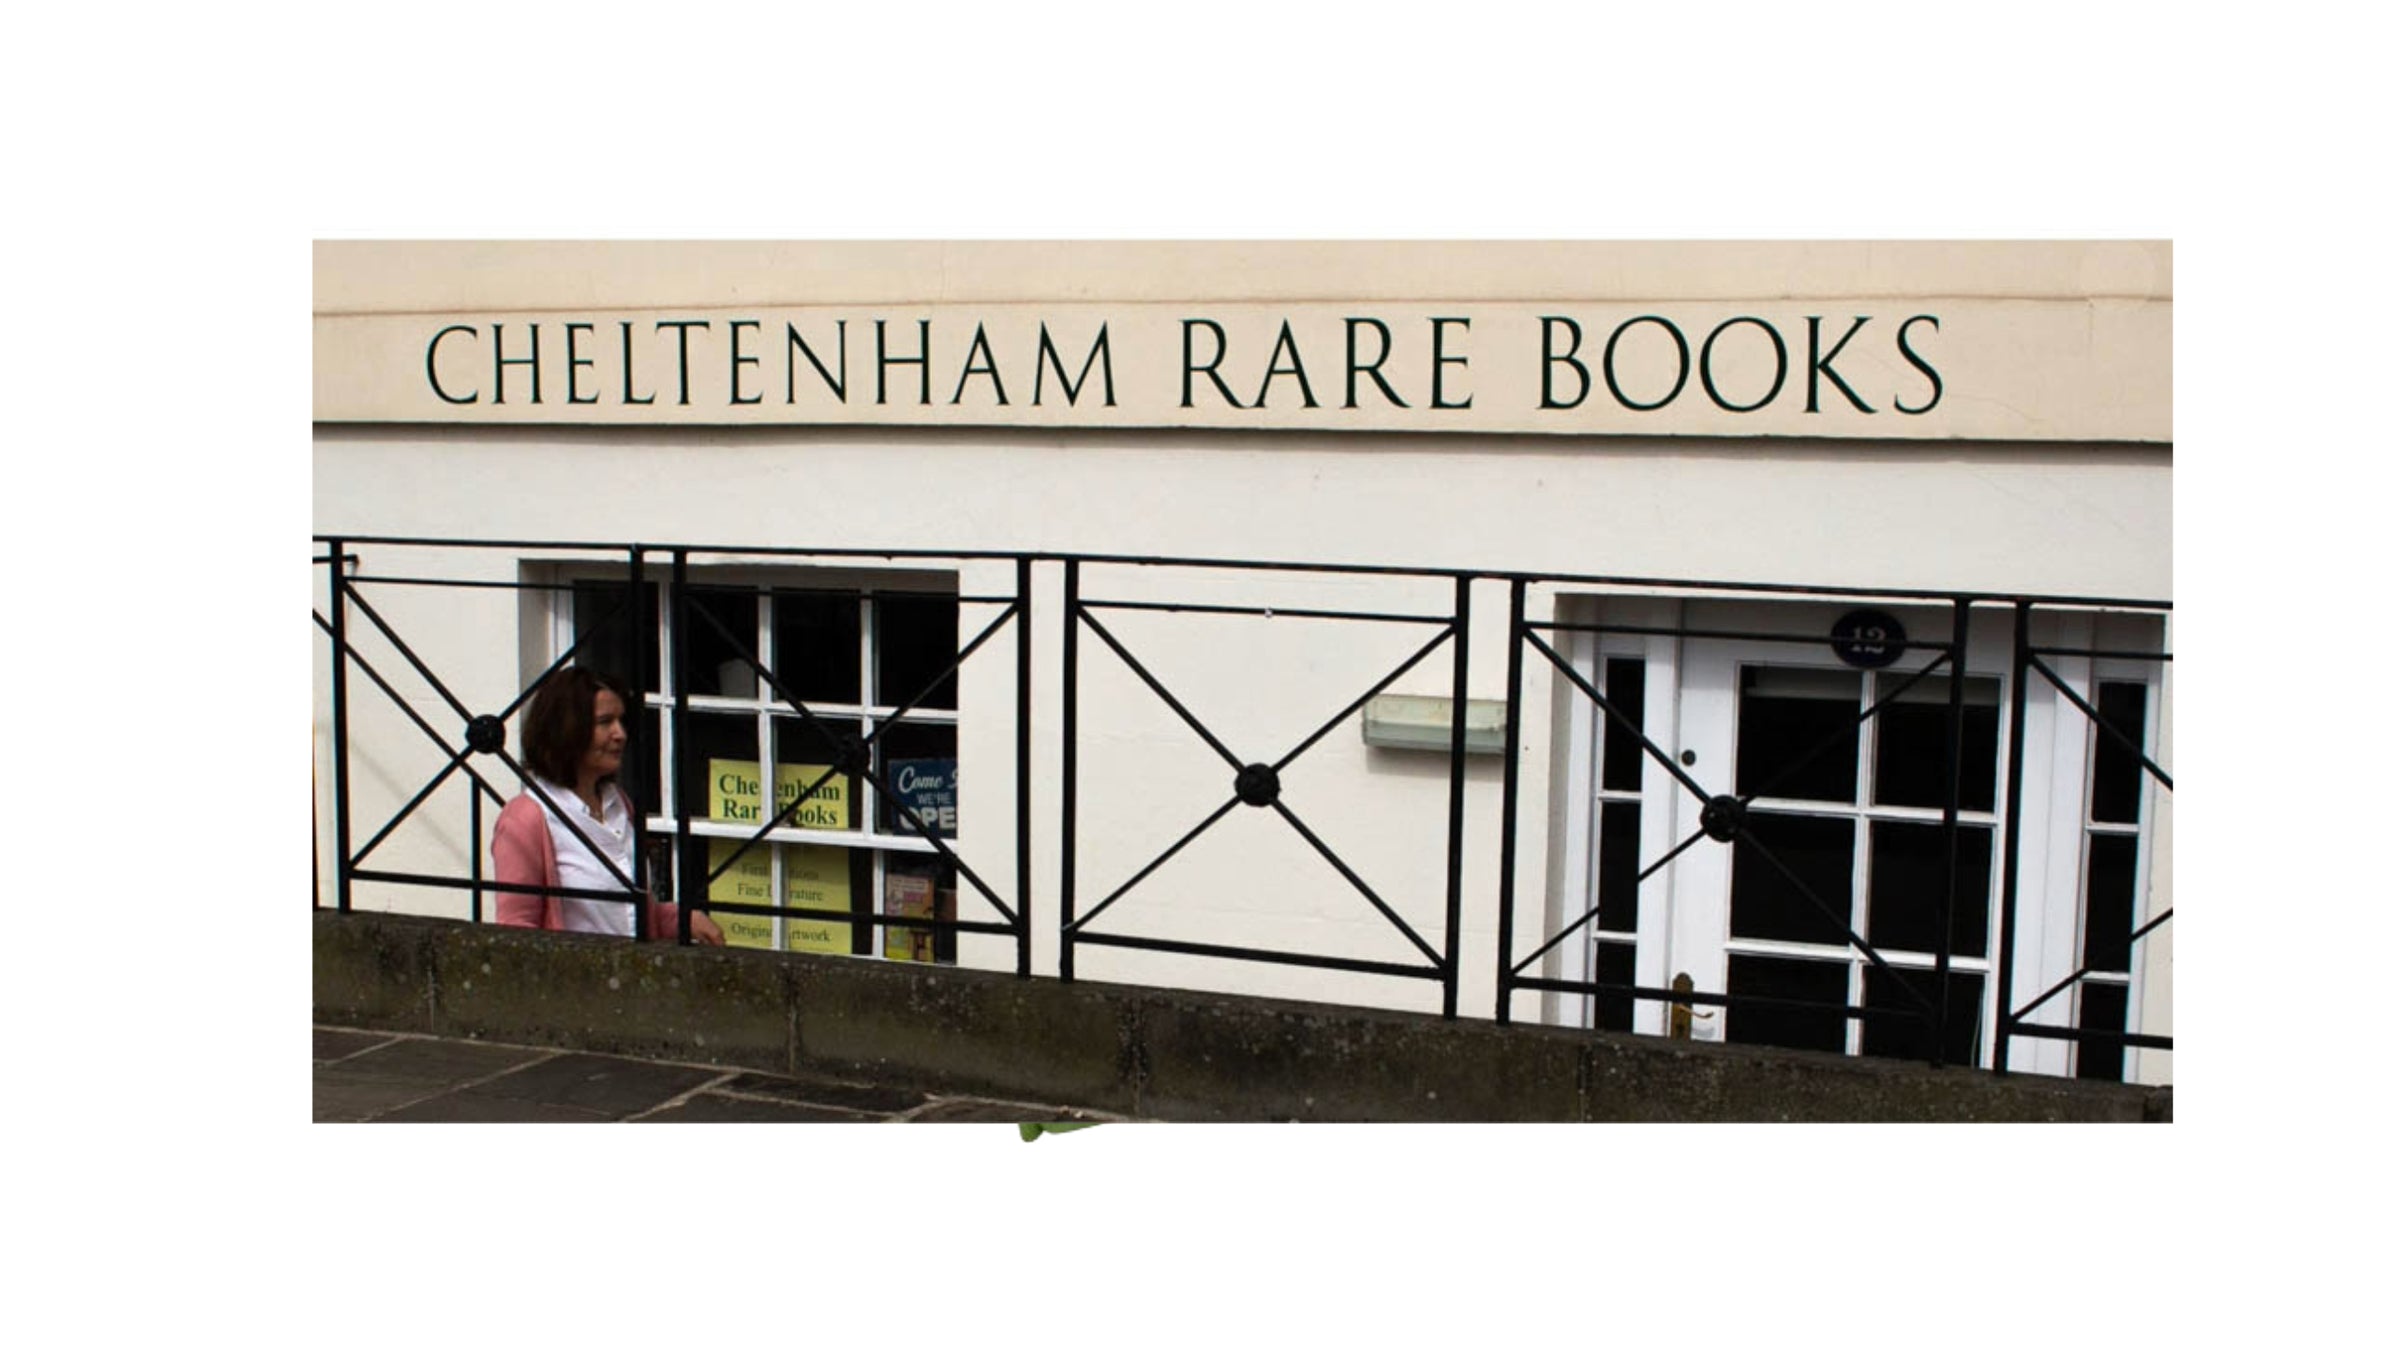 Cheltenham rare books exterior of shop